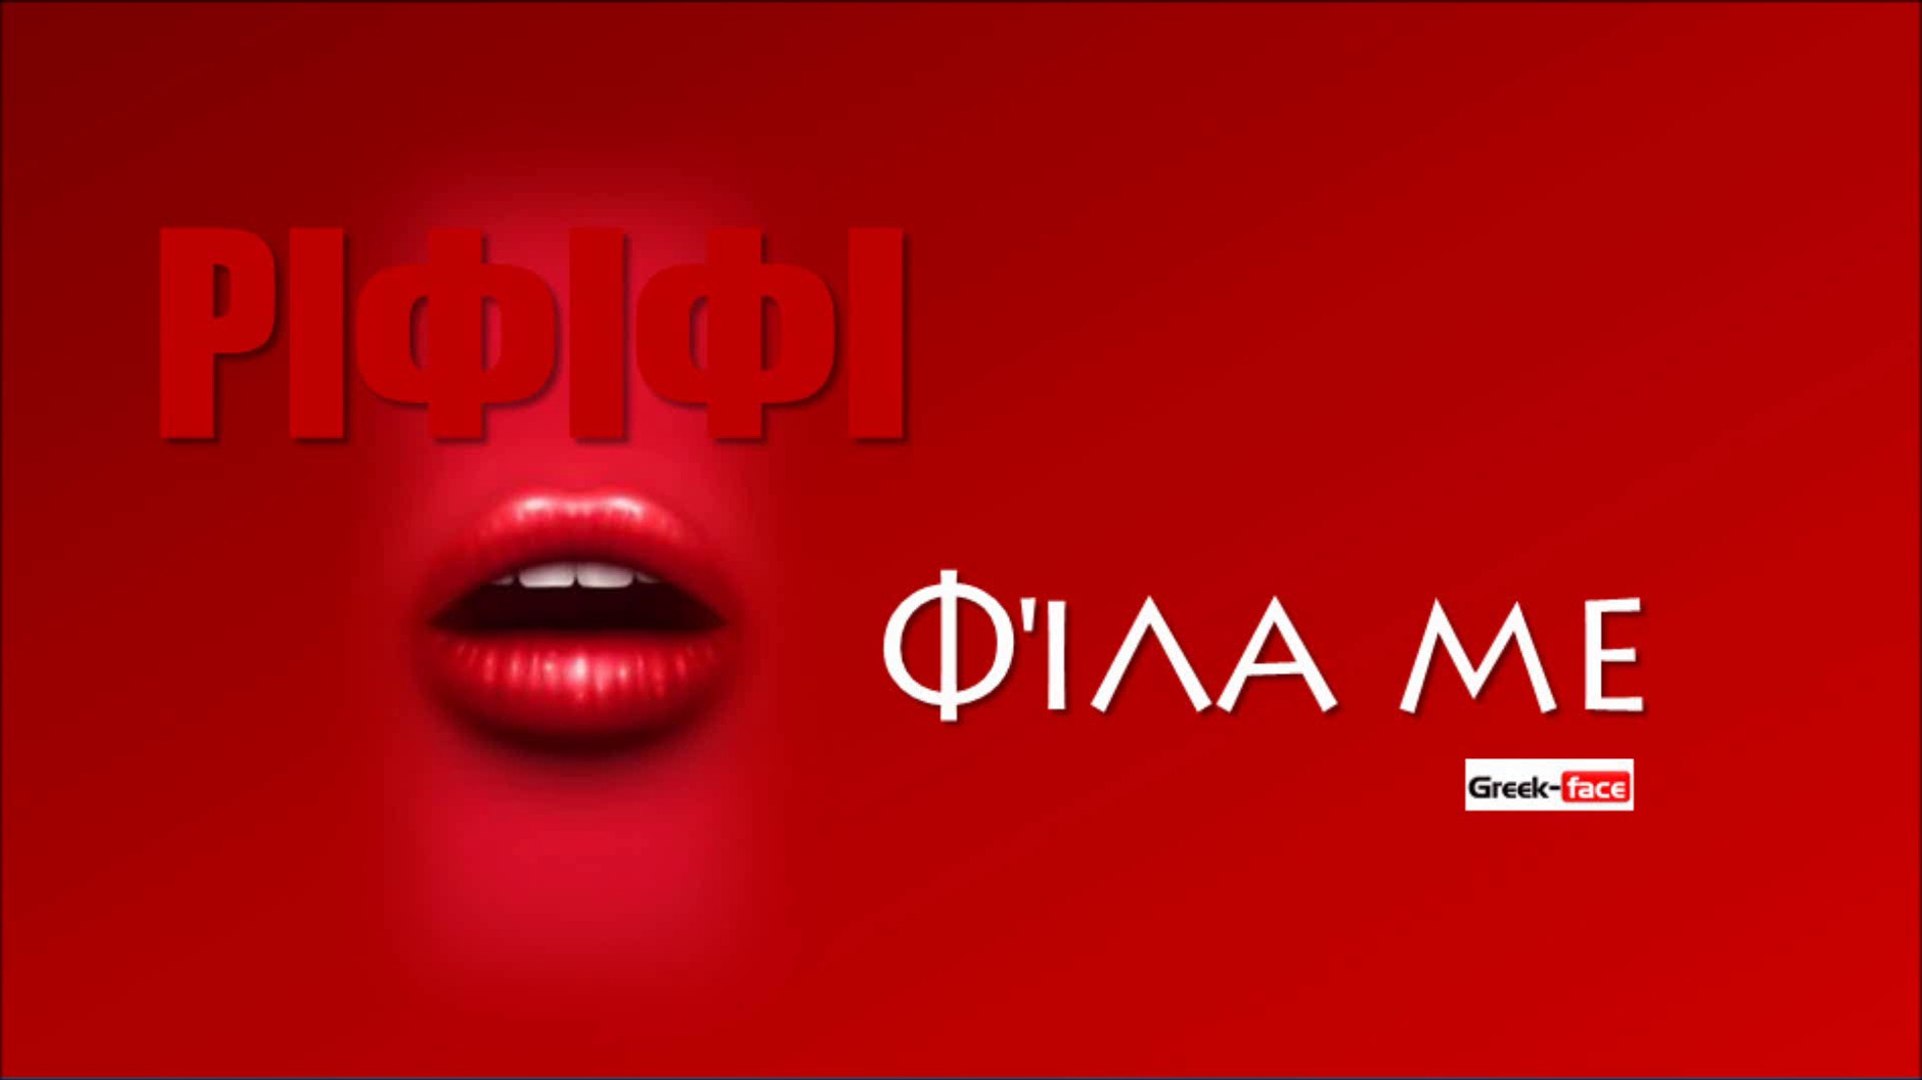 ΡΙΦ | ΡΙΦΙΦΙ - Φίλα με | 13.08.2015 (Official mp3 hellenicᴴᴰ music web  promotion) Greek- face - video Dailymotion